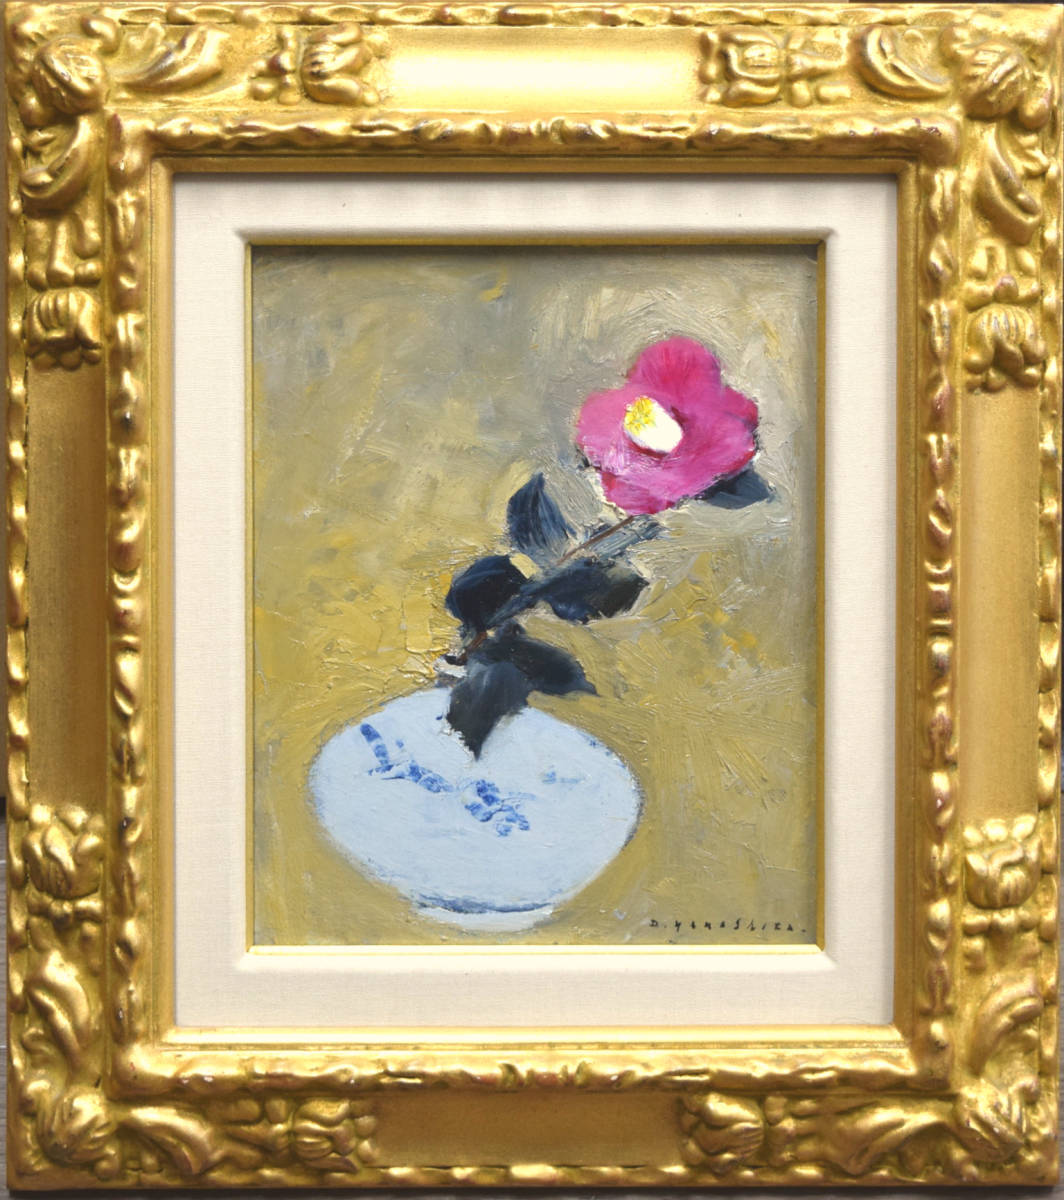 [Authentizität garantiert] Daigoro Yamashita Kamelien-Ölgemälde Nr. 3/Empfehlung enthalten/Rikkikai-Mitglied/Nichido-Galerie, Malerei, Ölgemälde, Stilllebenmalerei